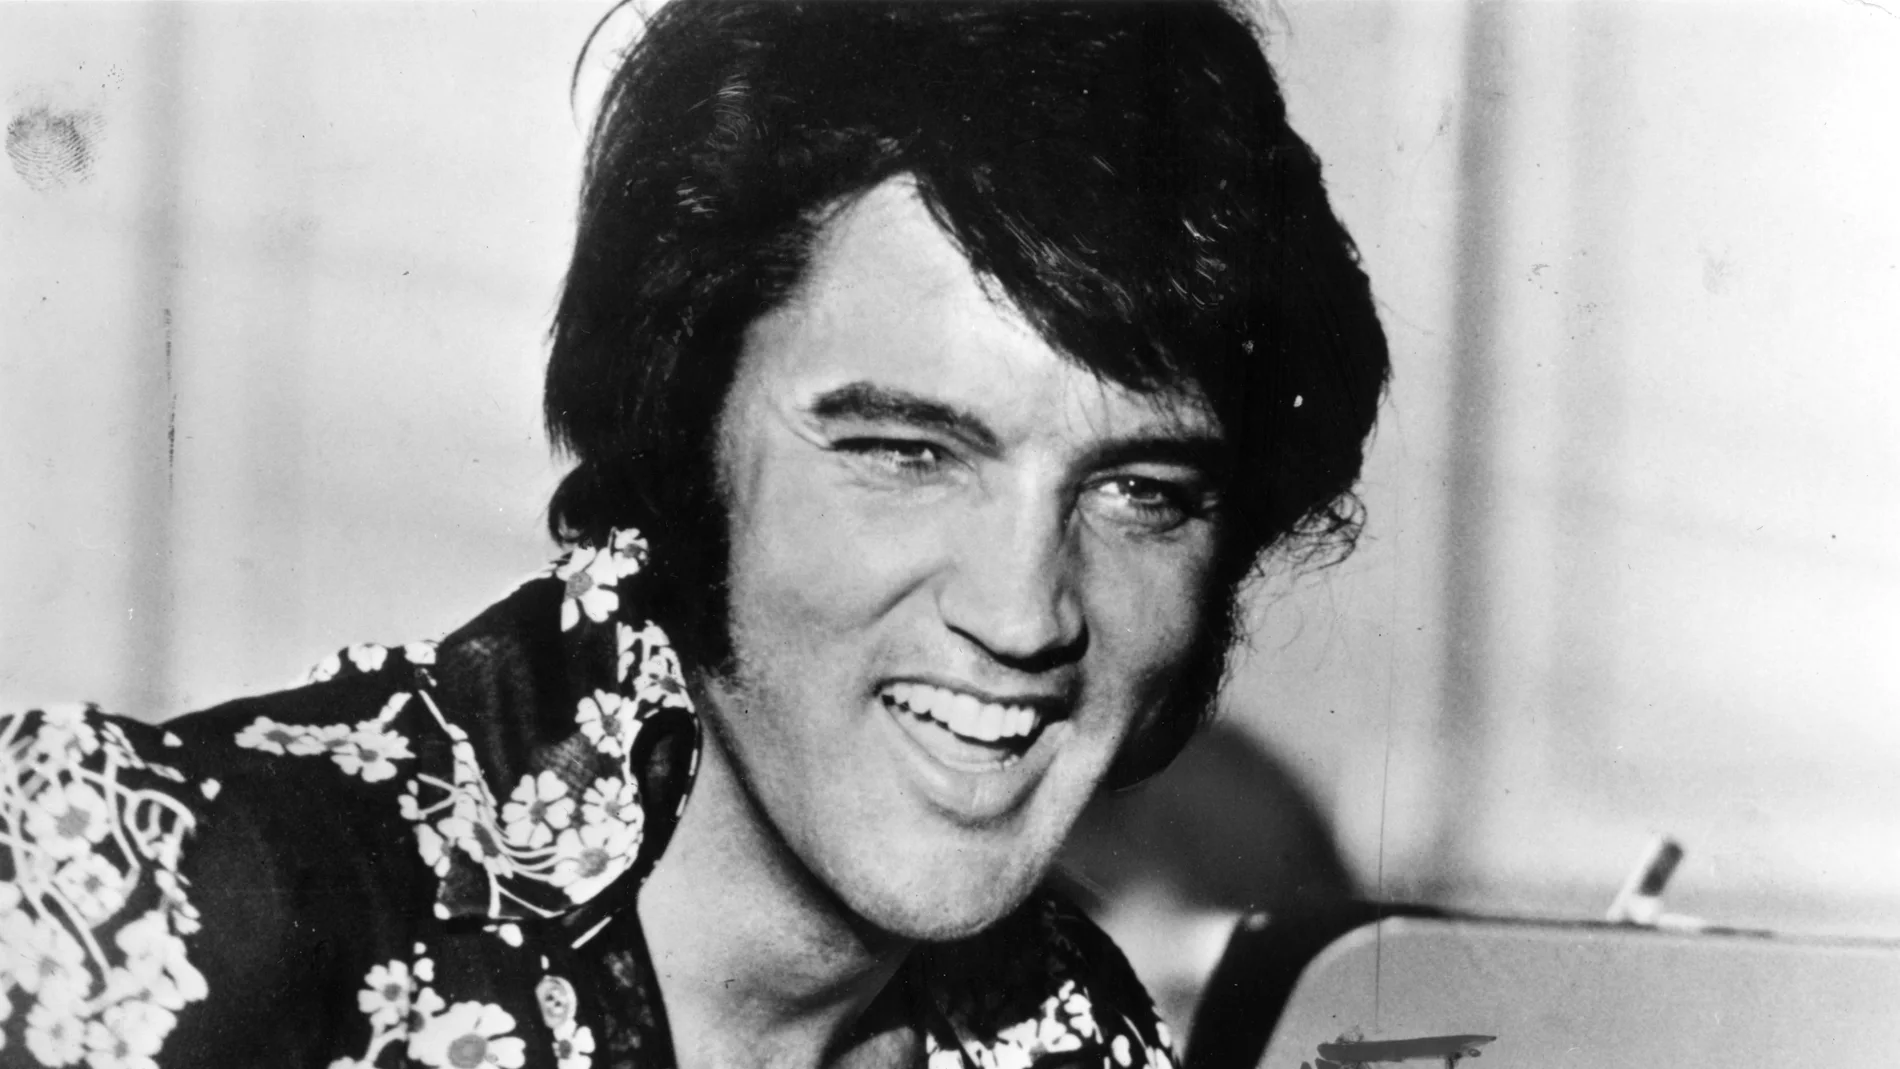 La evolución de Elvis Presley en 10 fotos 